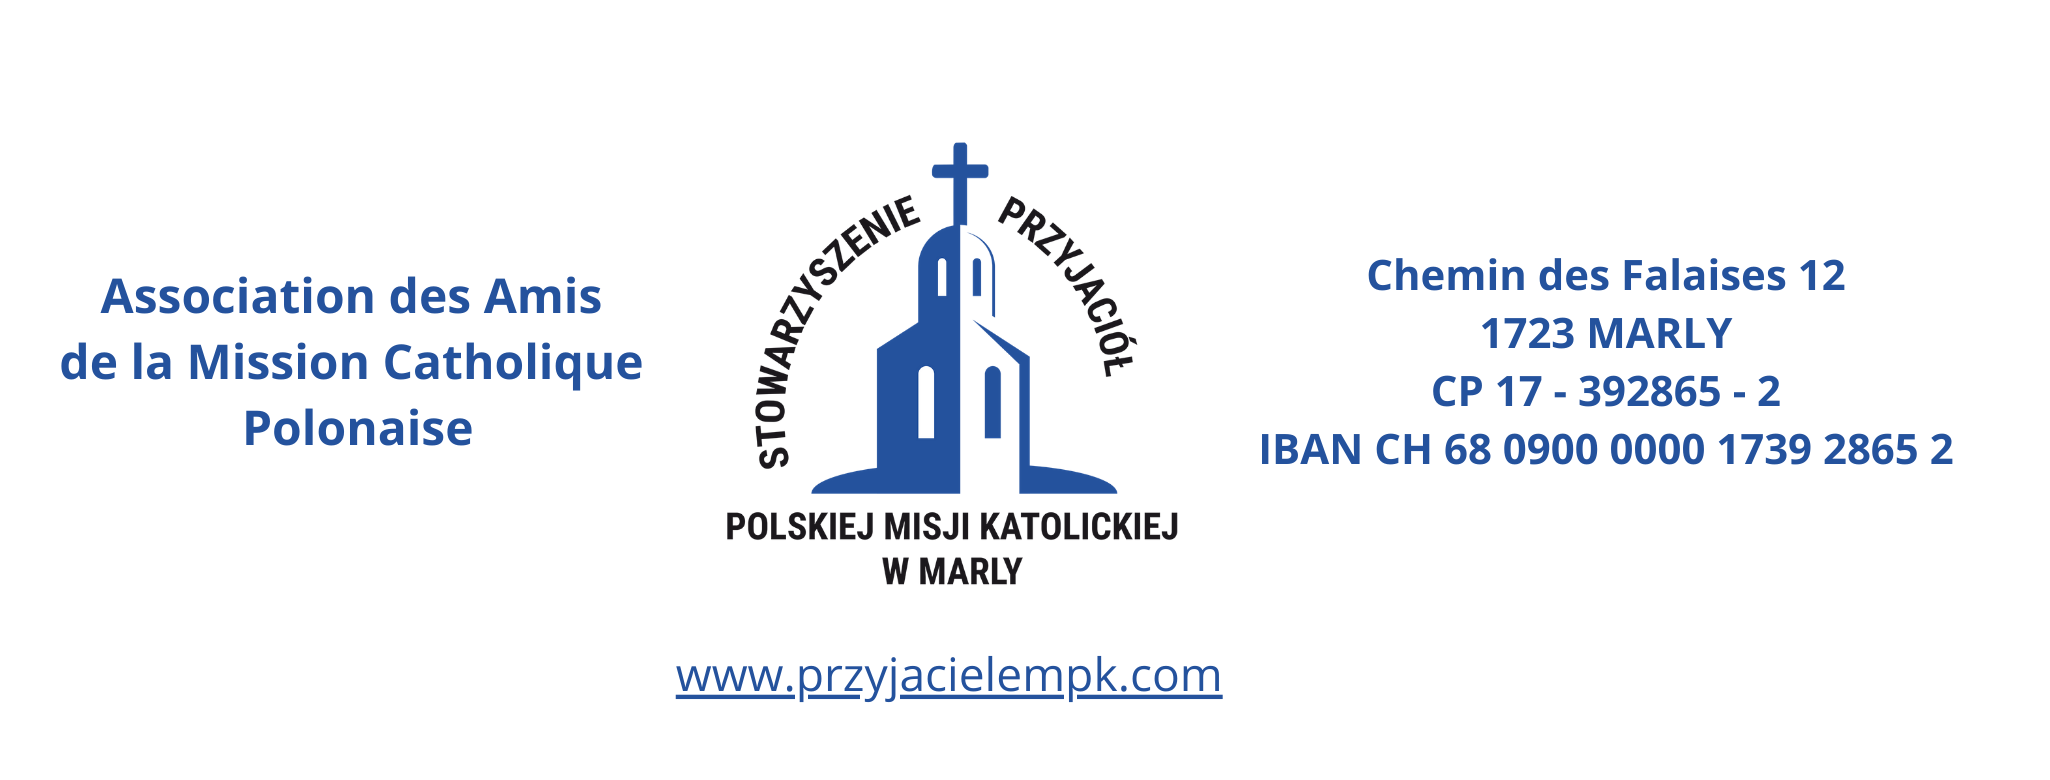 Association des Amis de la Mission Catholique Polonaise